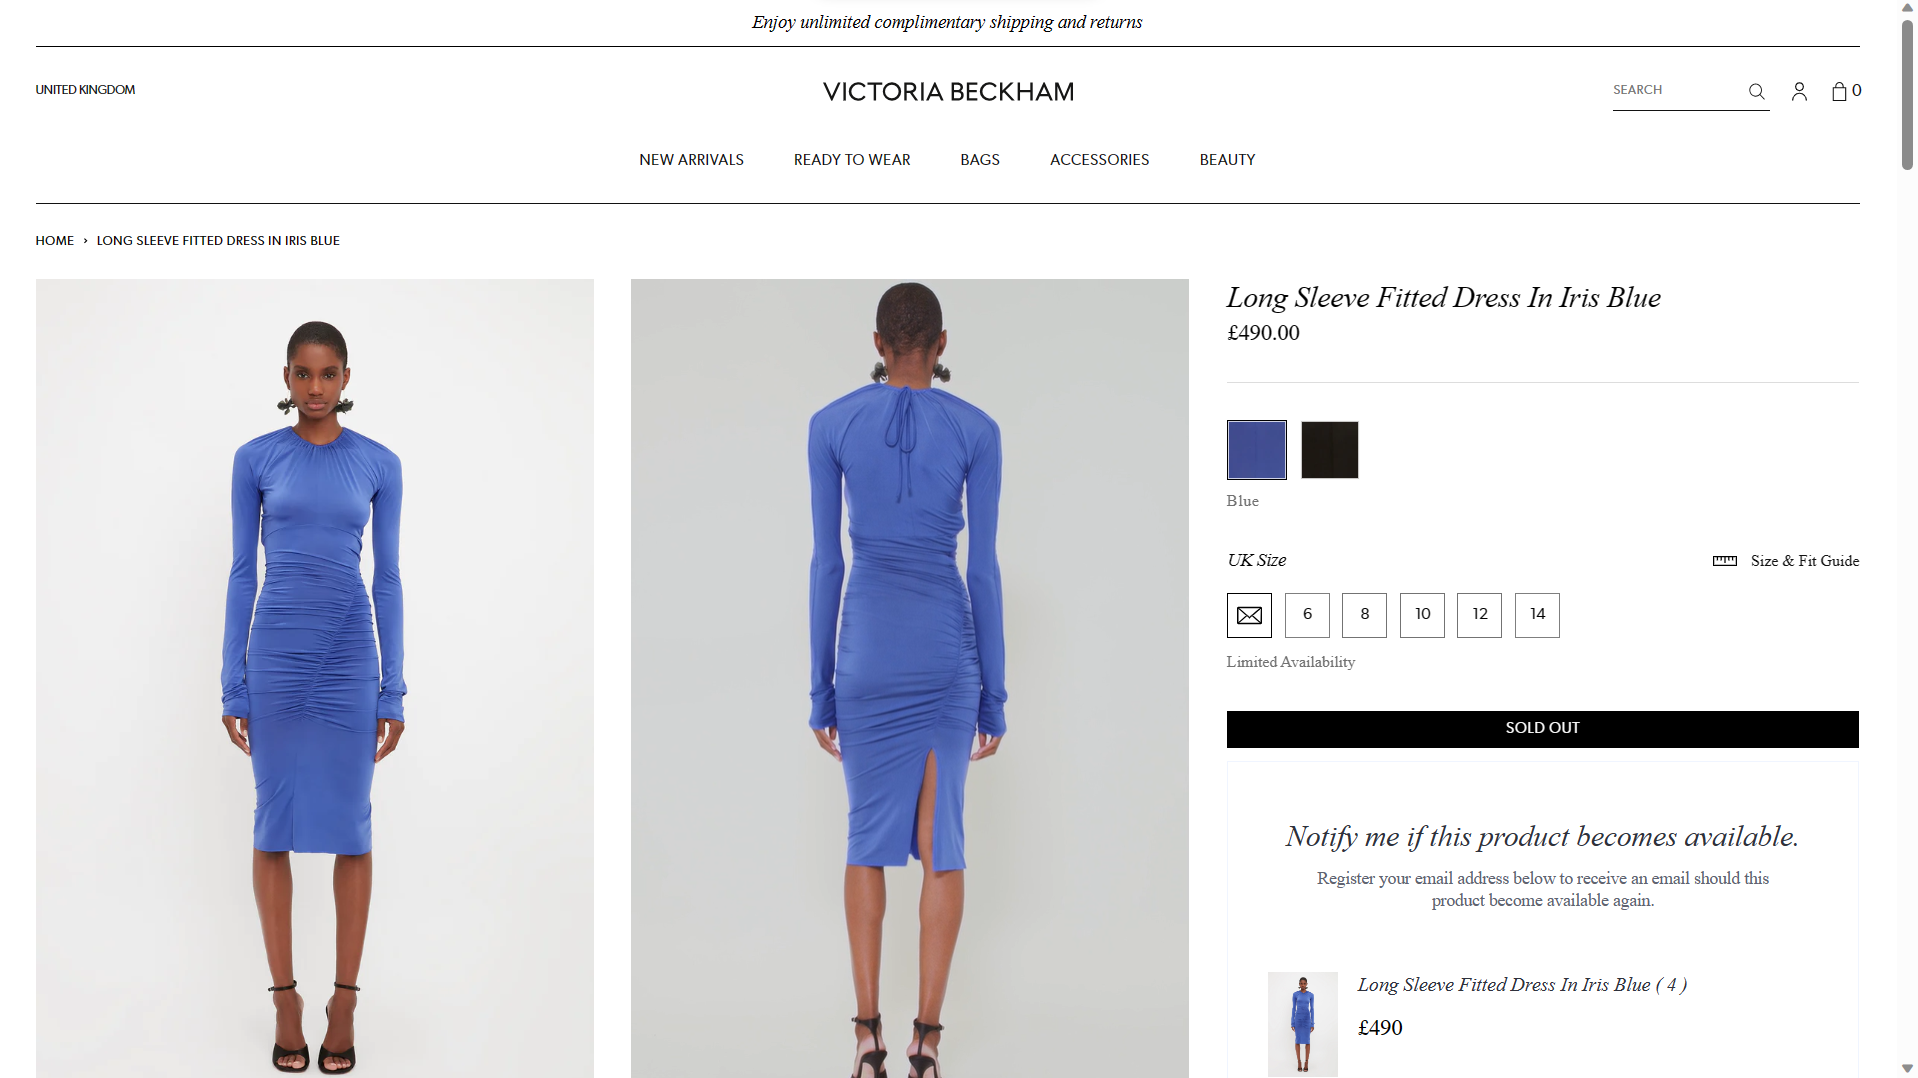 Vestido similar ao de Bruna Marquezine está disponível para compra no site de Victoria Beckham por 499 euros, o que equivale a R$ 2,5 mil na cotação atual (Foto: Reprodução/Site Victoria Beckham)